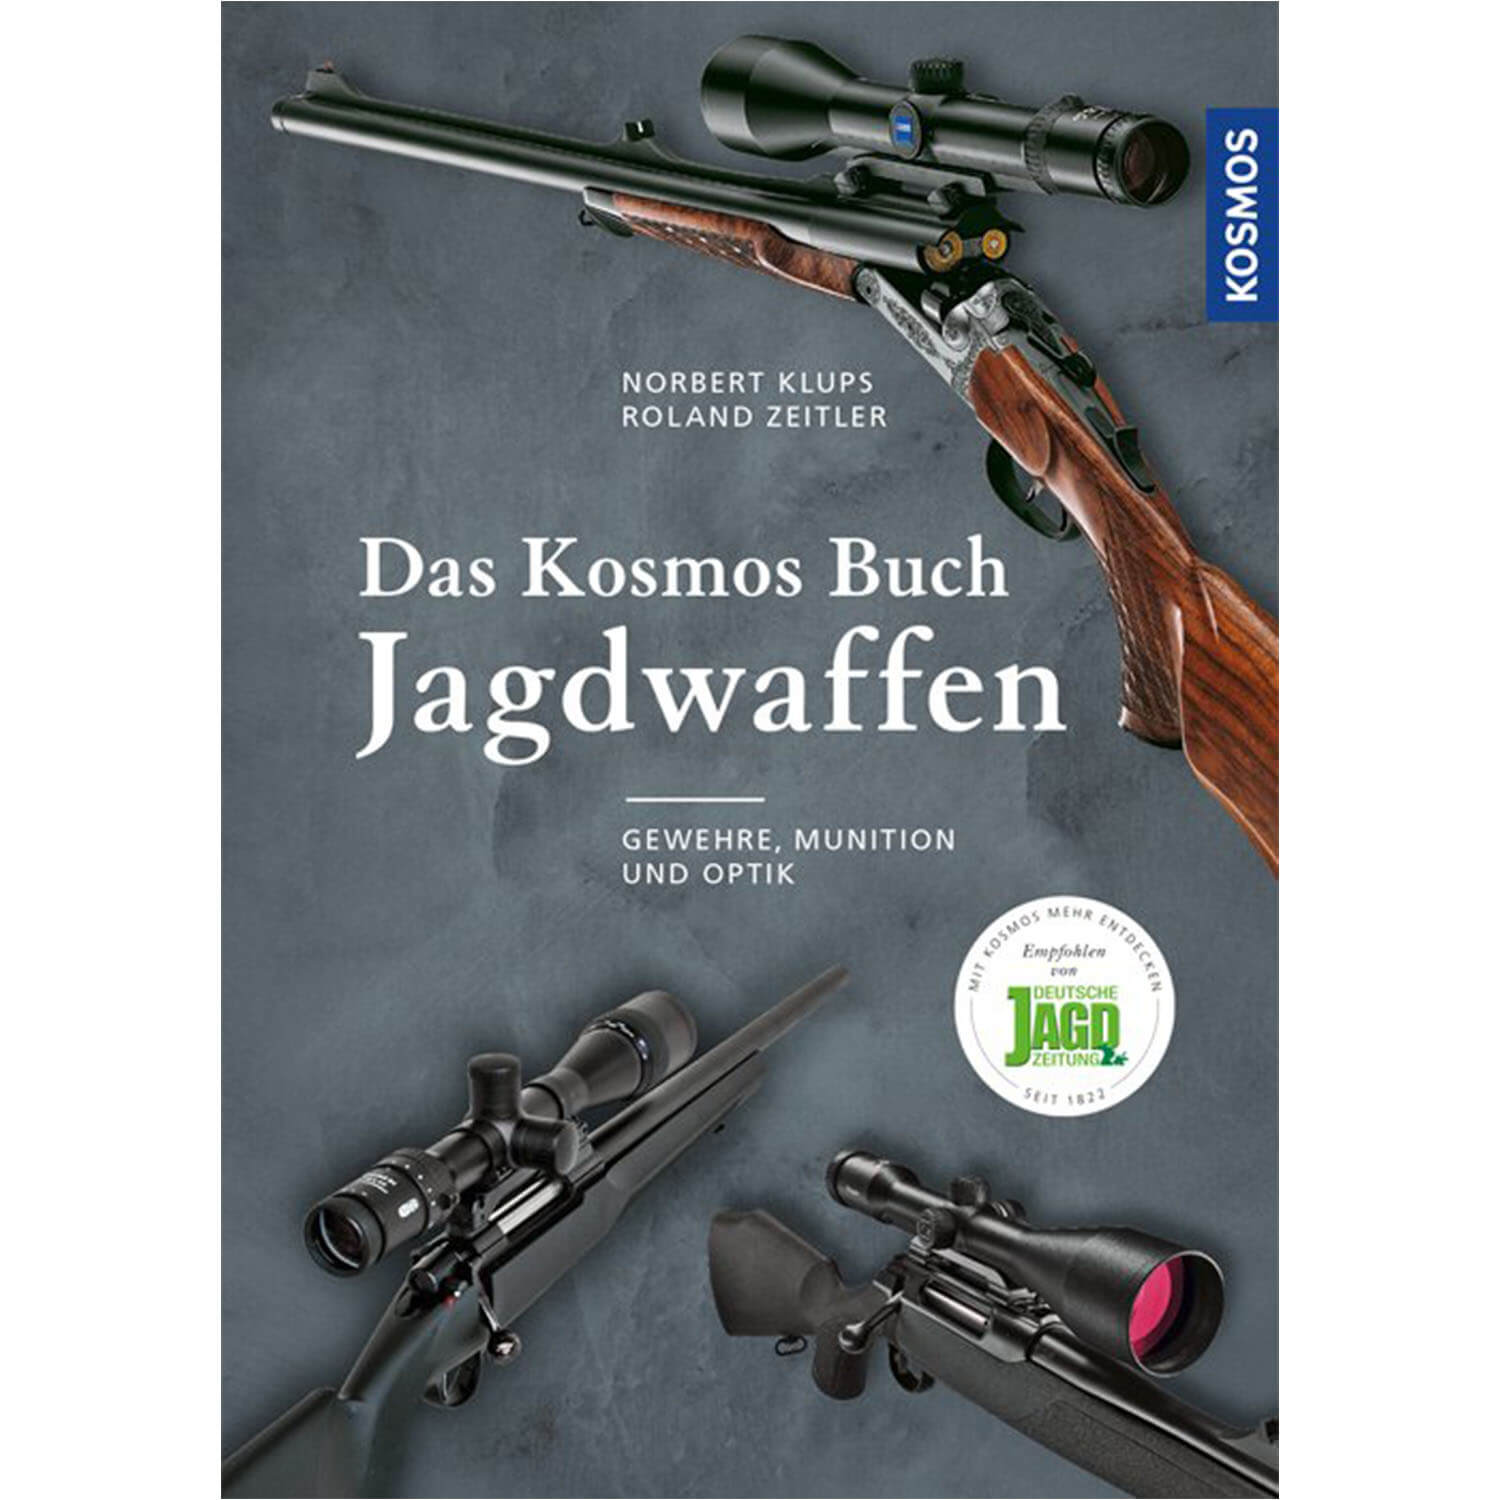 Das Kosmos Buch Jagdwaffen - Buch - Klups & Zeitler - Jagdausrüstung